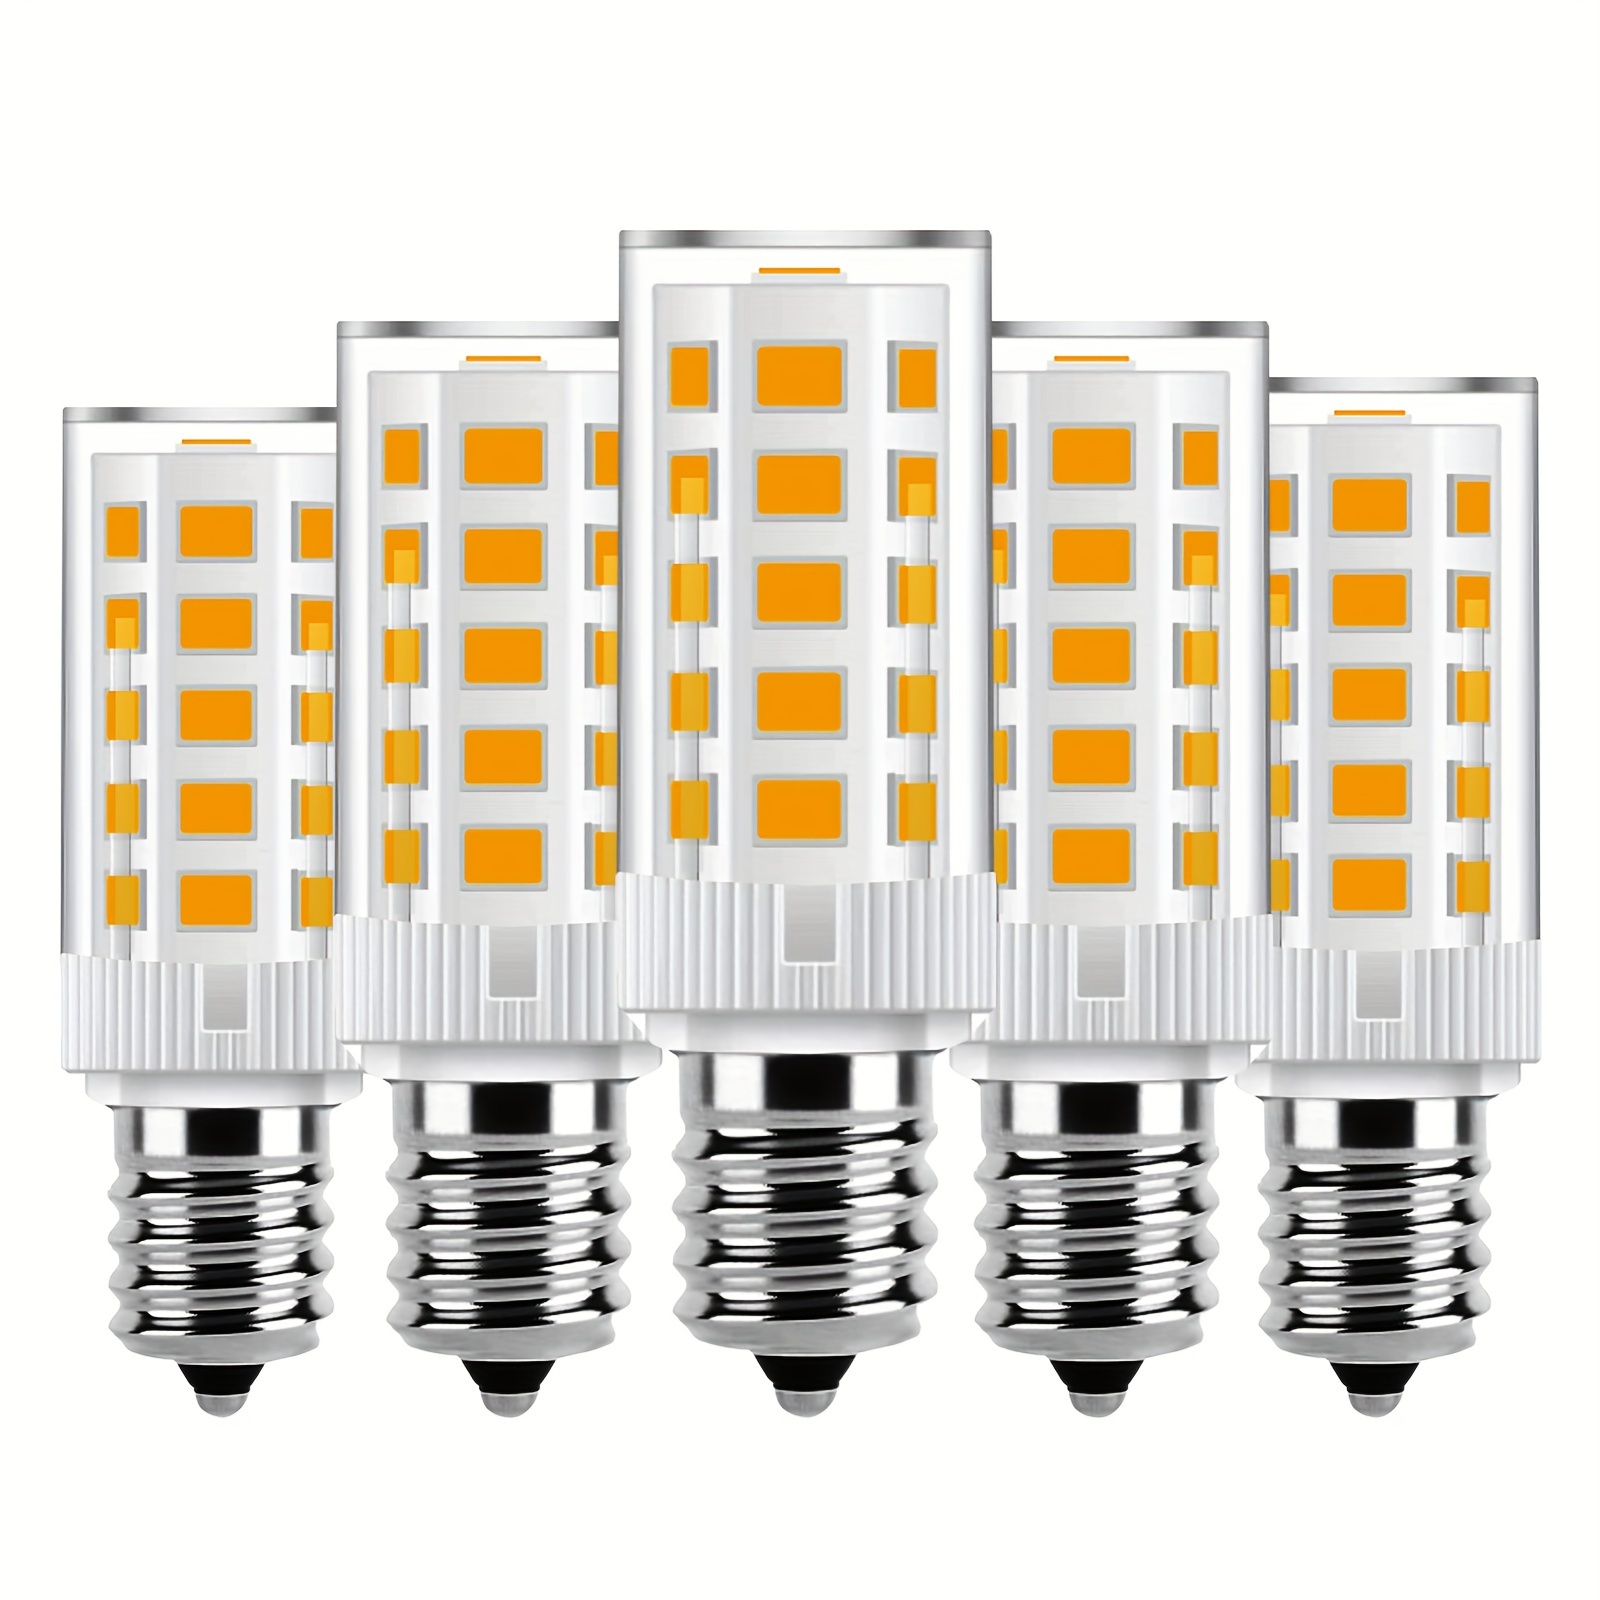 4pcs Led Bulb G45 3w 5w 6w 7w E14 E27 3000k 4000k 6000k Warm Cold Lampada  220v -240v Lamp Bombillas For Home Decoration Office - Led Bulbs & Tubes -  AliExpress